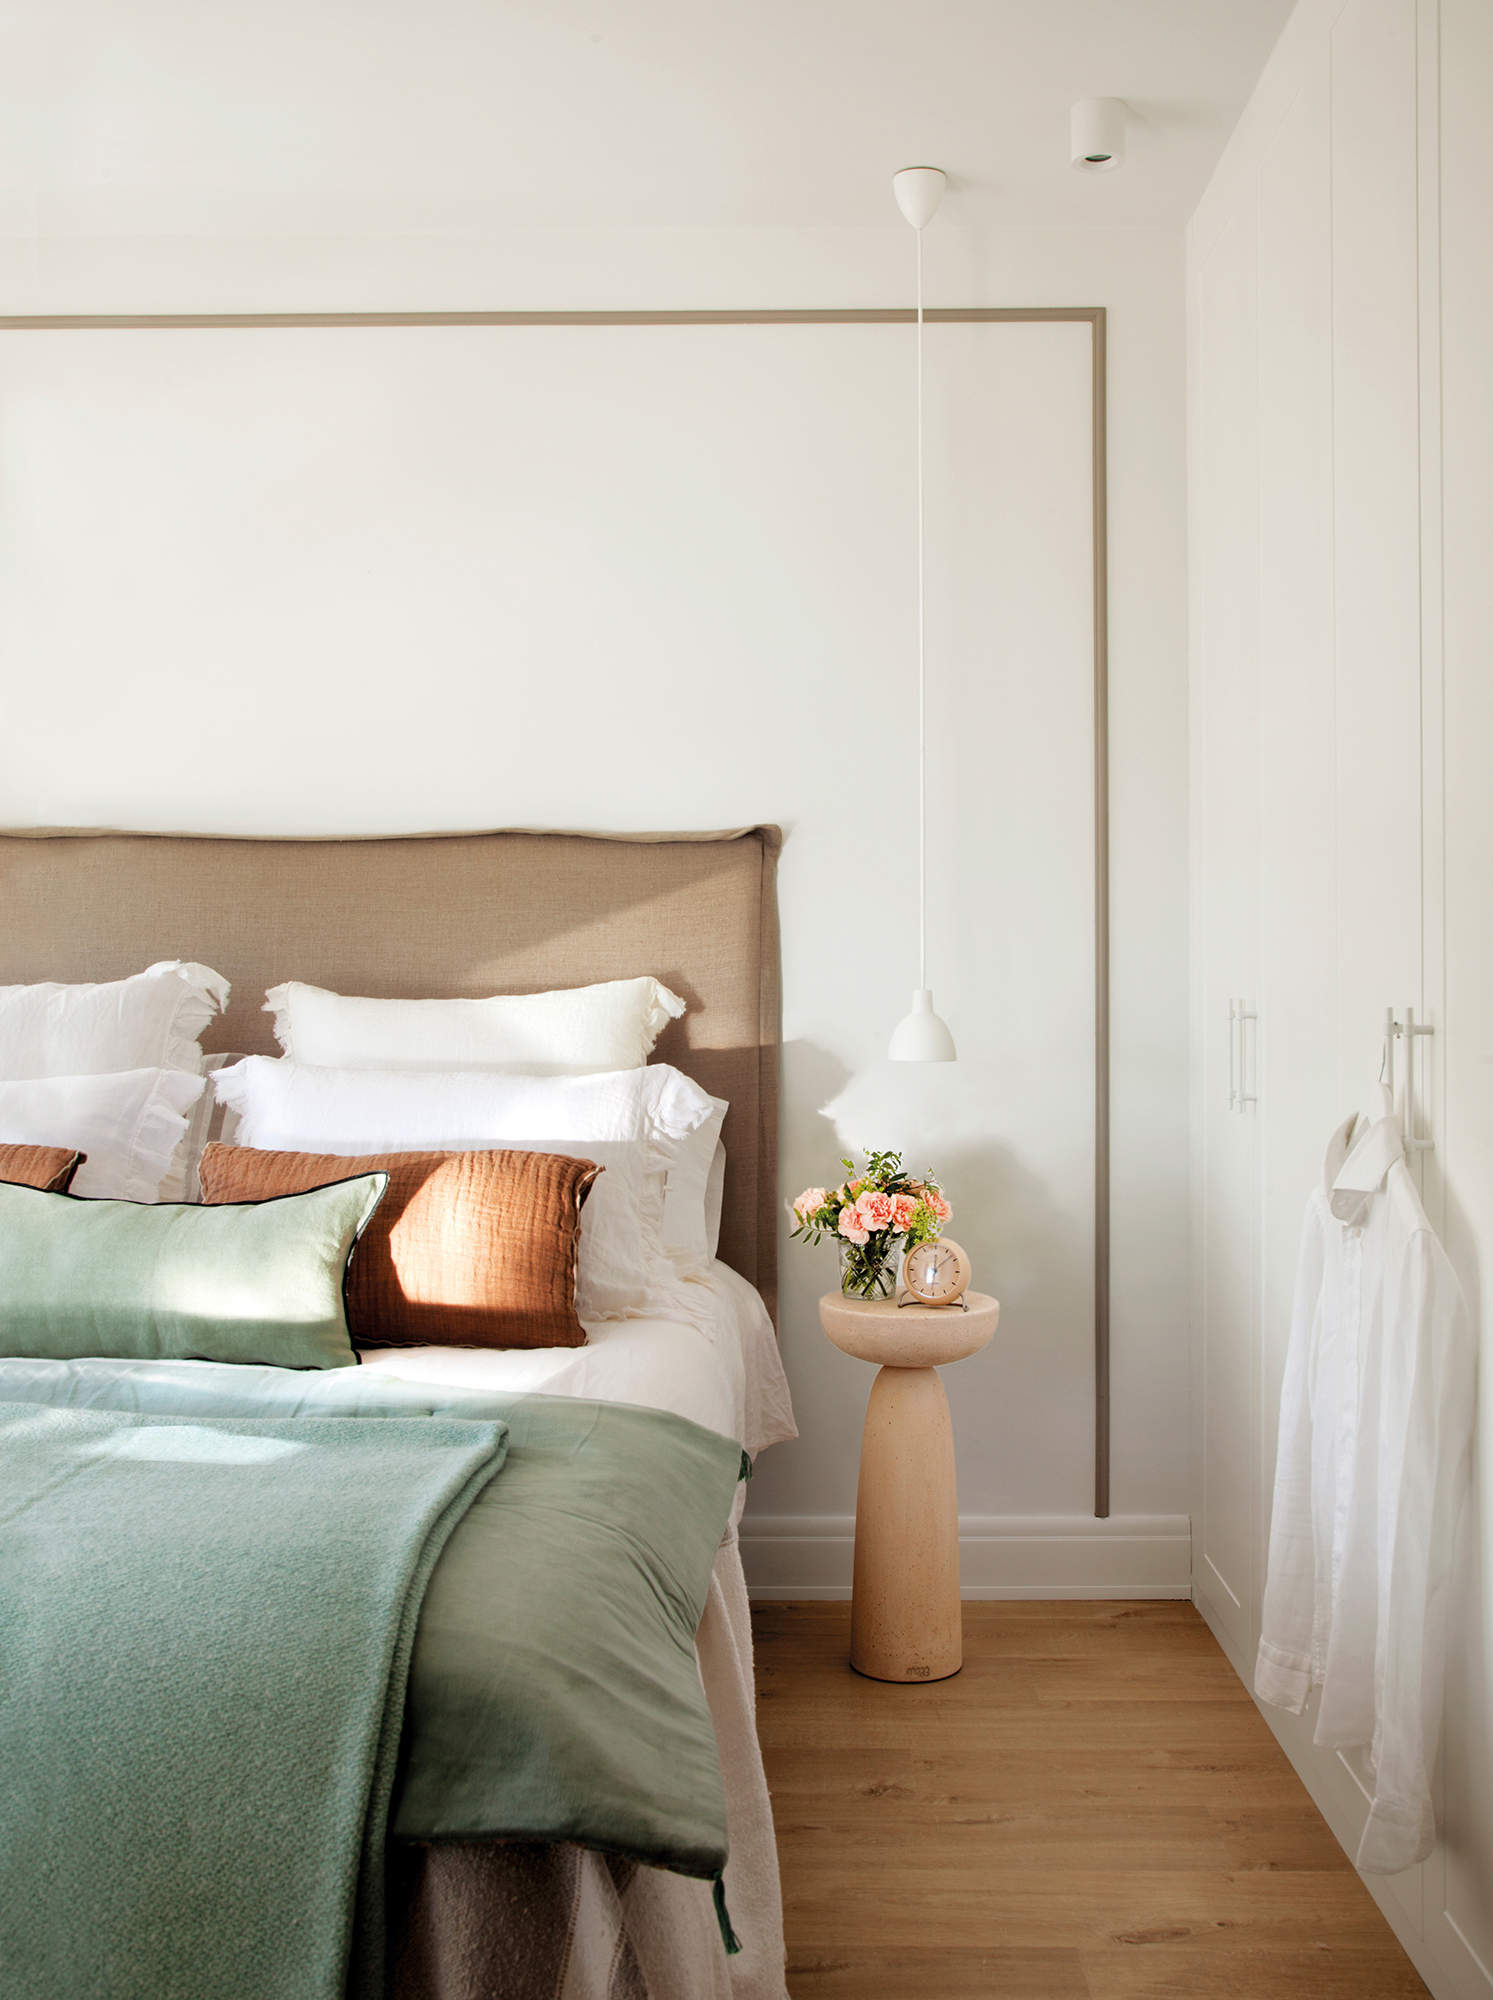 Dormitorio con molduras, cabecero tapizado y mesitas redondas de madera